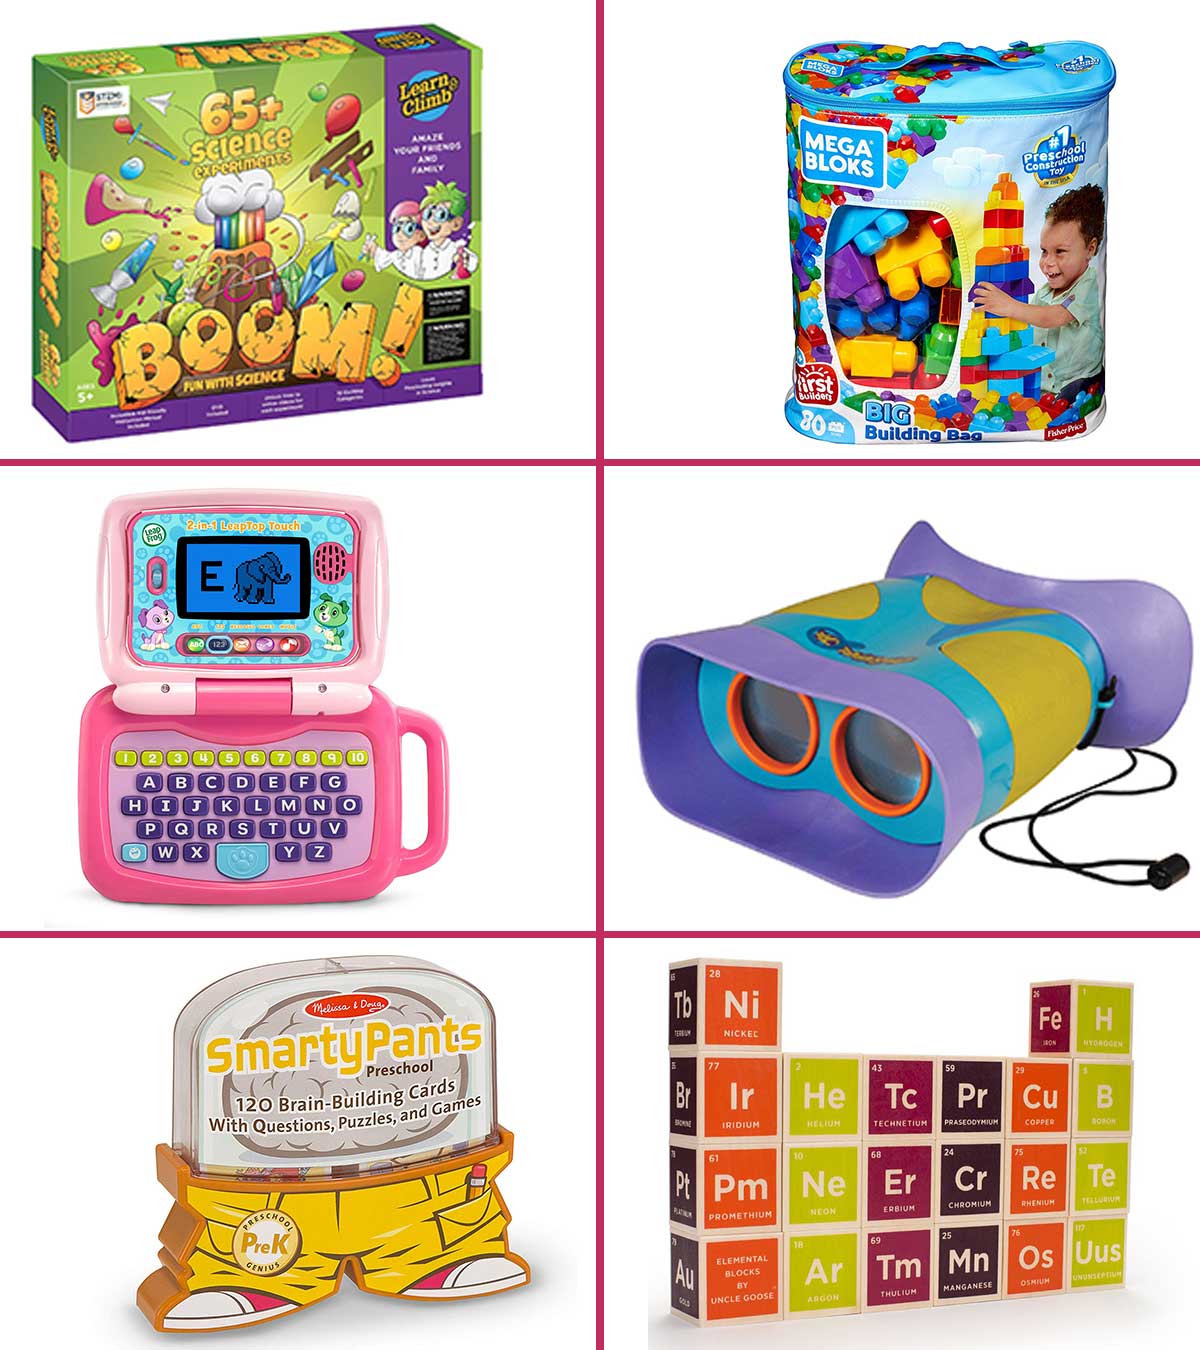 https://www.momjunction.com/wp-content/uploads/2014/04/25-Best-Educational-Toys-For-Kids-In-2020.jpg